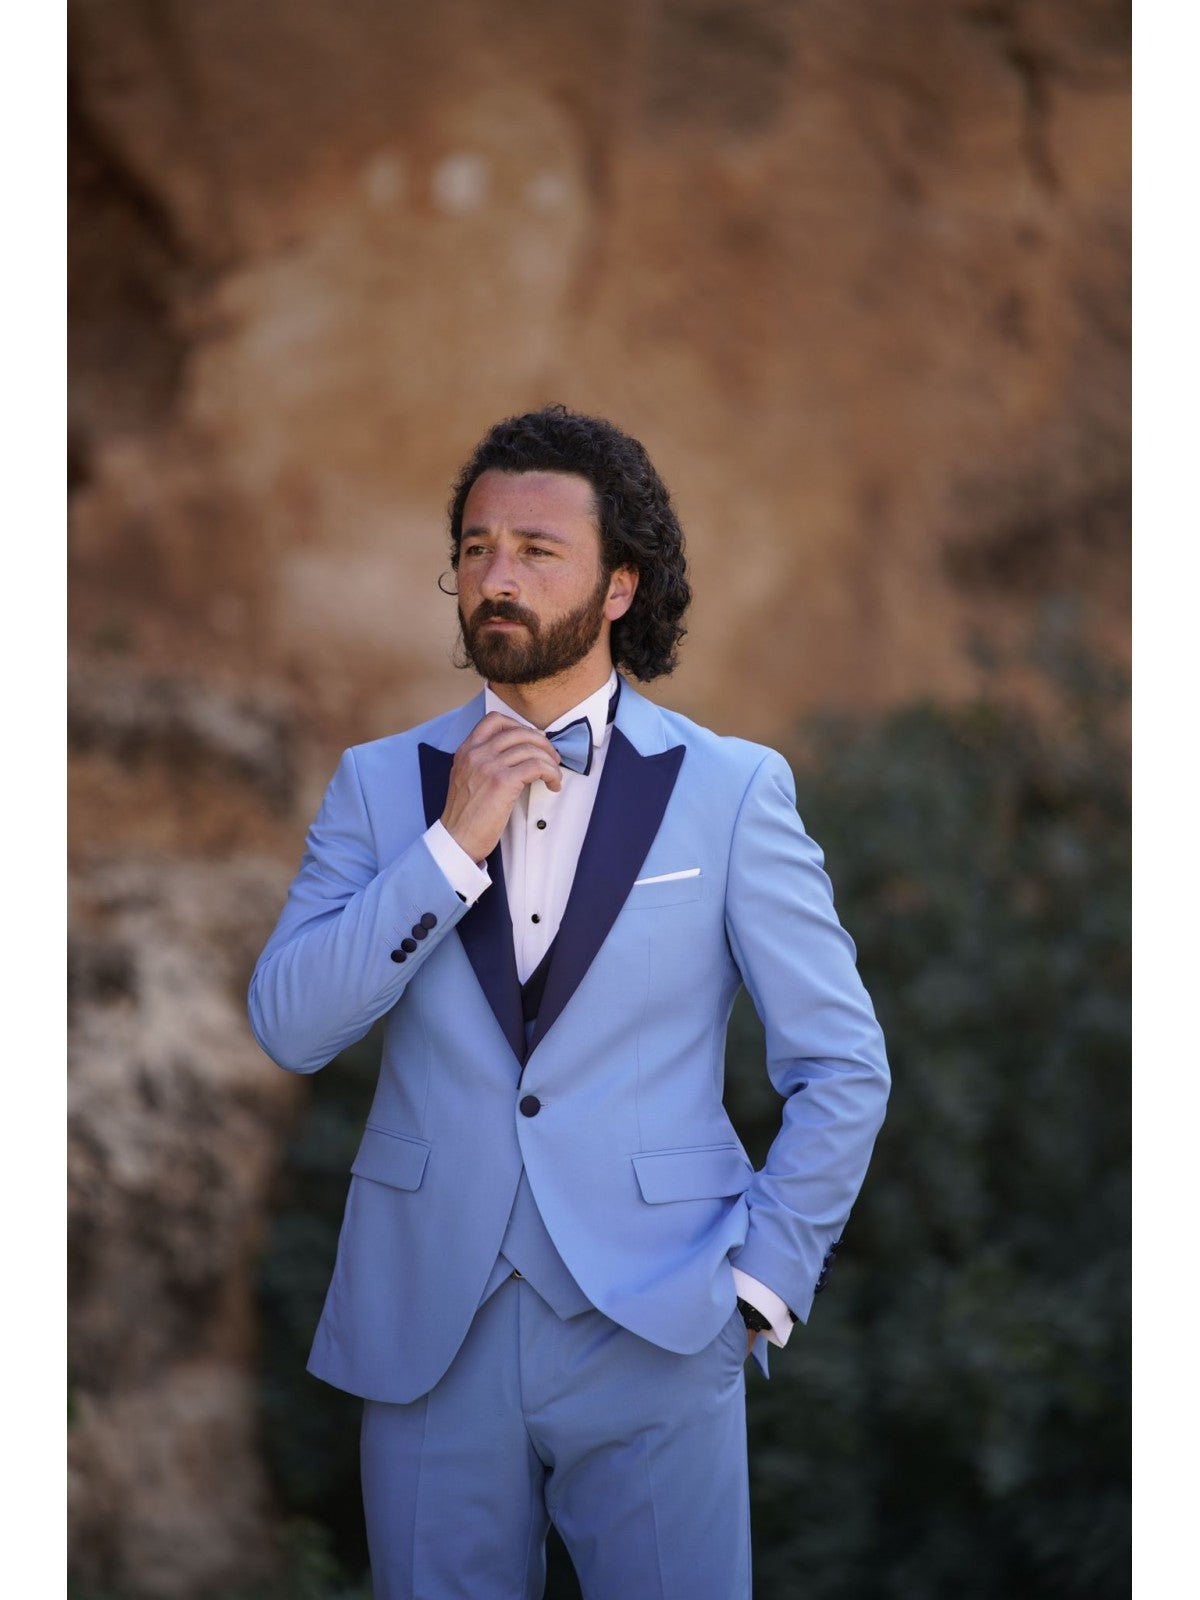 Premium Classic Dark Blue Three Piece Tuxedo Suit for Men Classic Wedding &  Formal Attire Men-tailored Fit, the Rising Sun Store, Vardo - Etsy